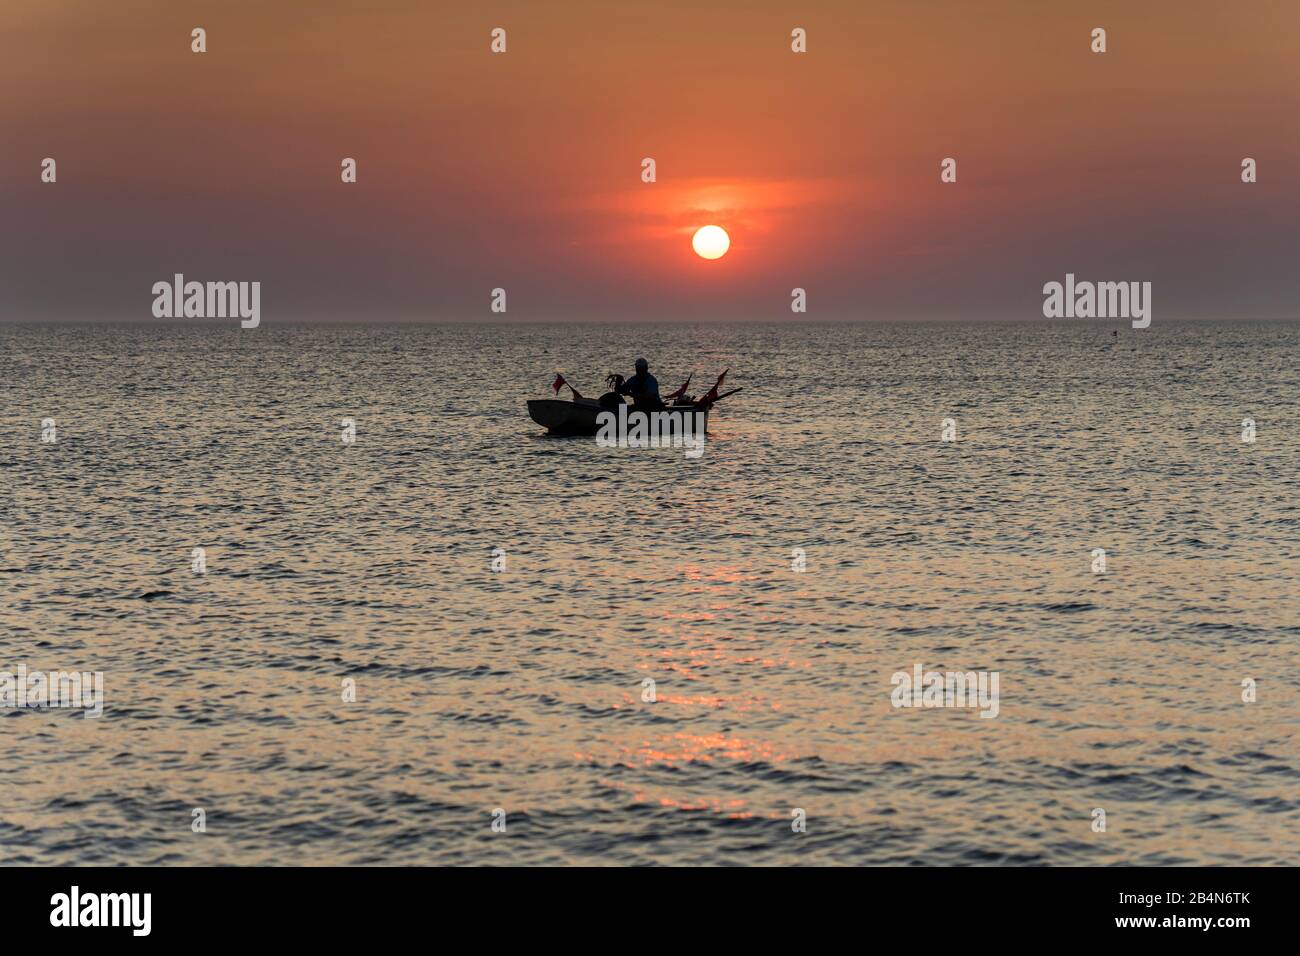 Der Strand an der Ostsee mit Spiegelung der schönen Wolken und einem Fischerboot im Abendlicht Banque D'Images